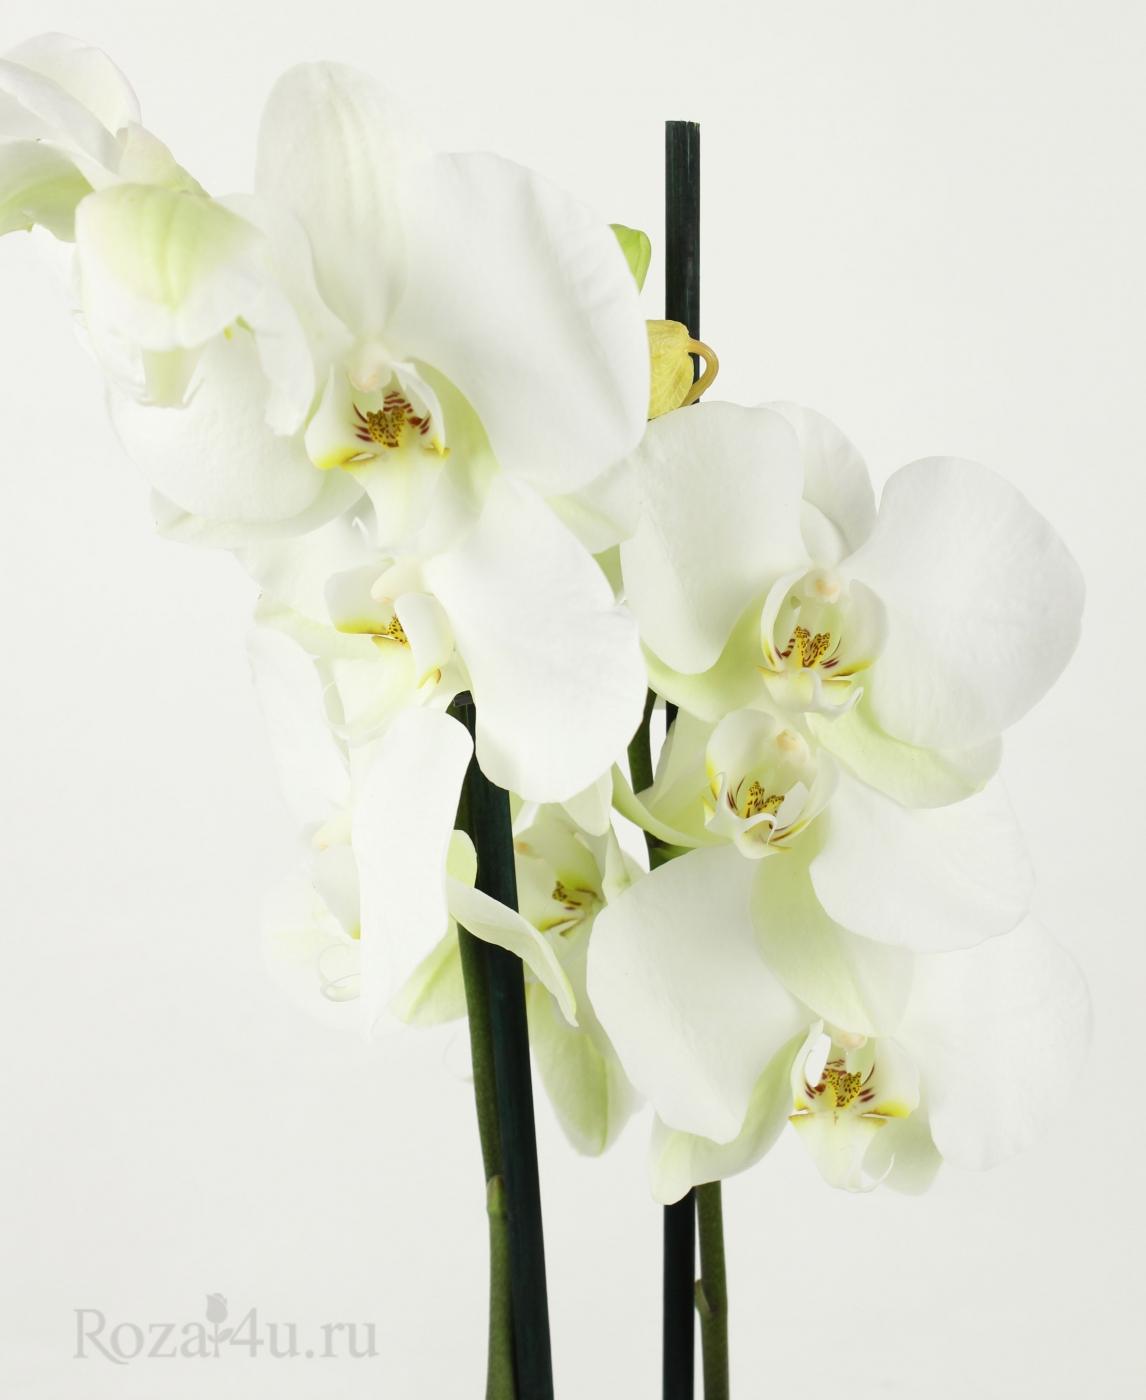 Орхидея Фаленопсис двуствольная бело-зеленая